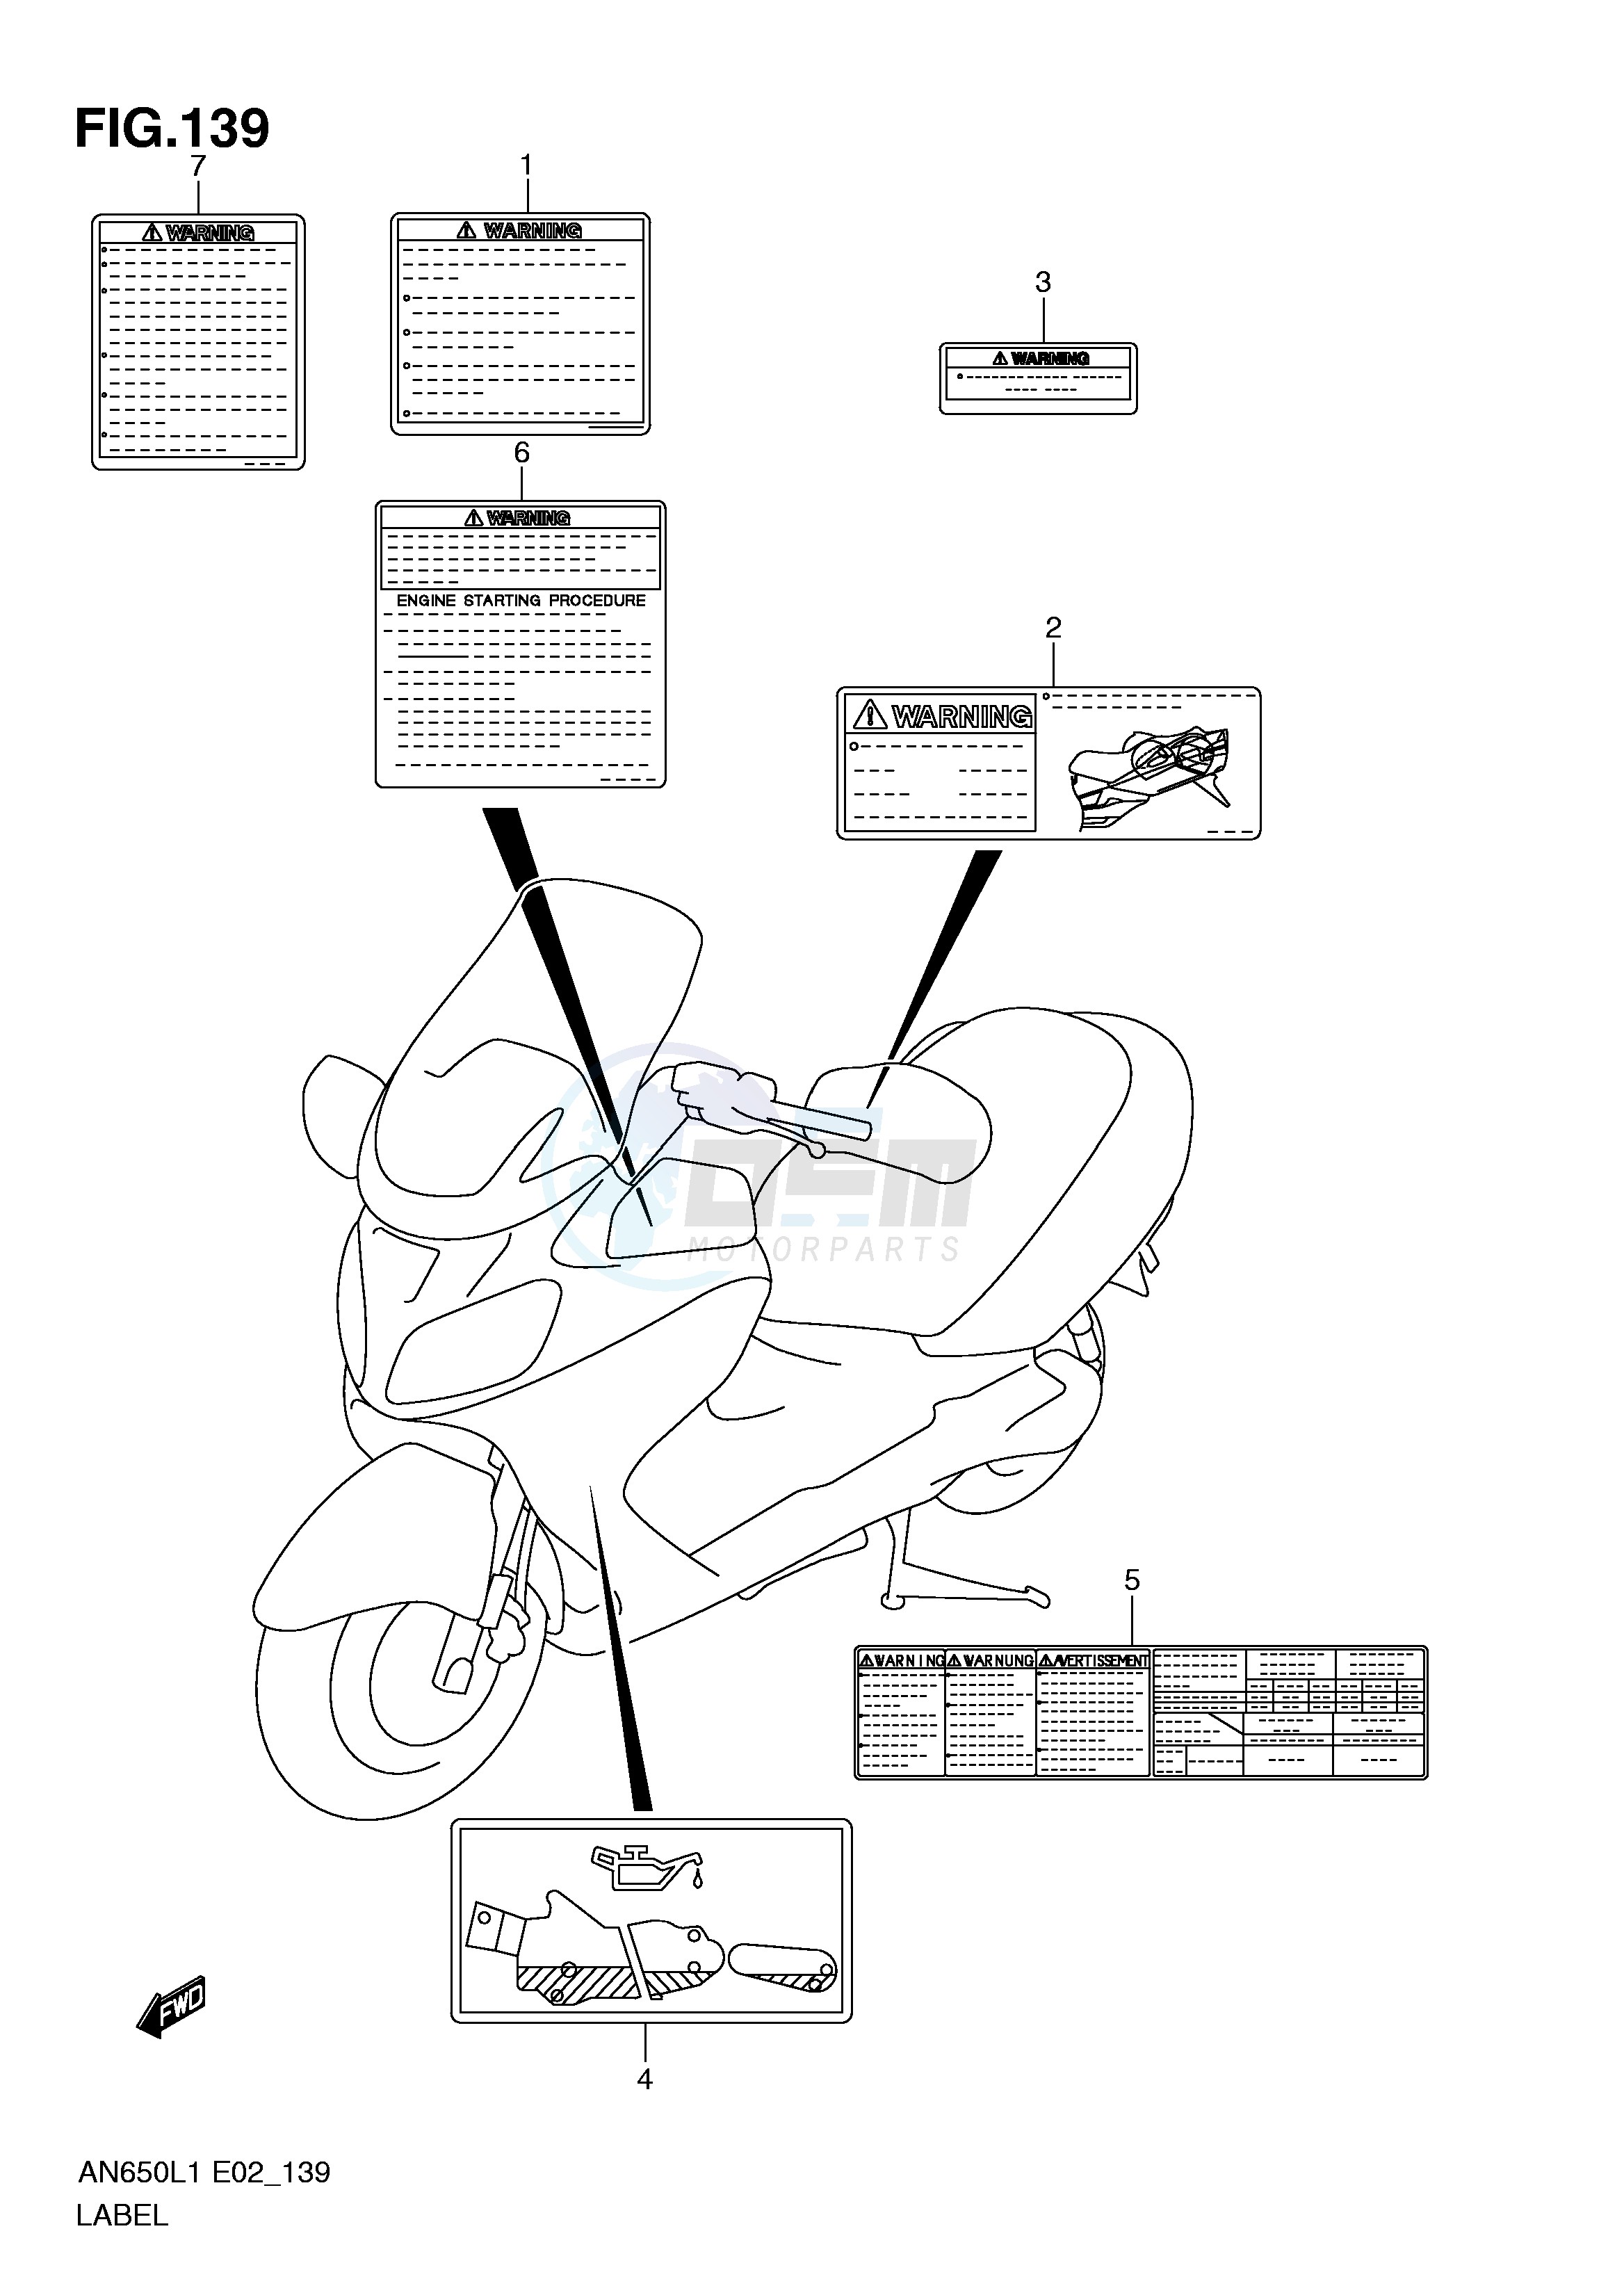 LABEL (AN650L1 E19) blueprint